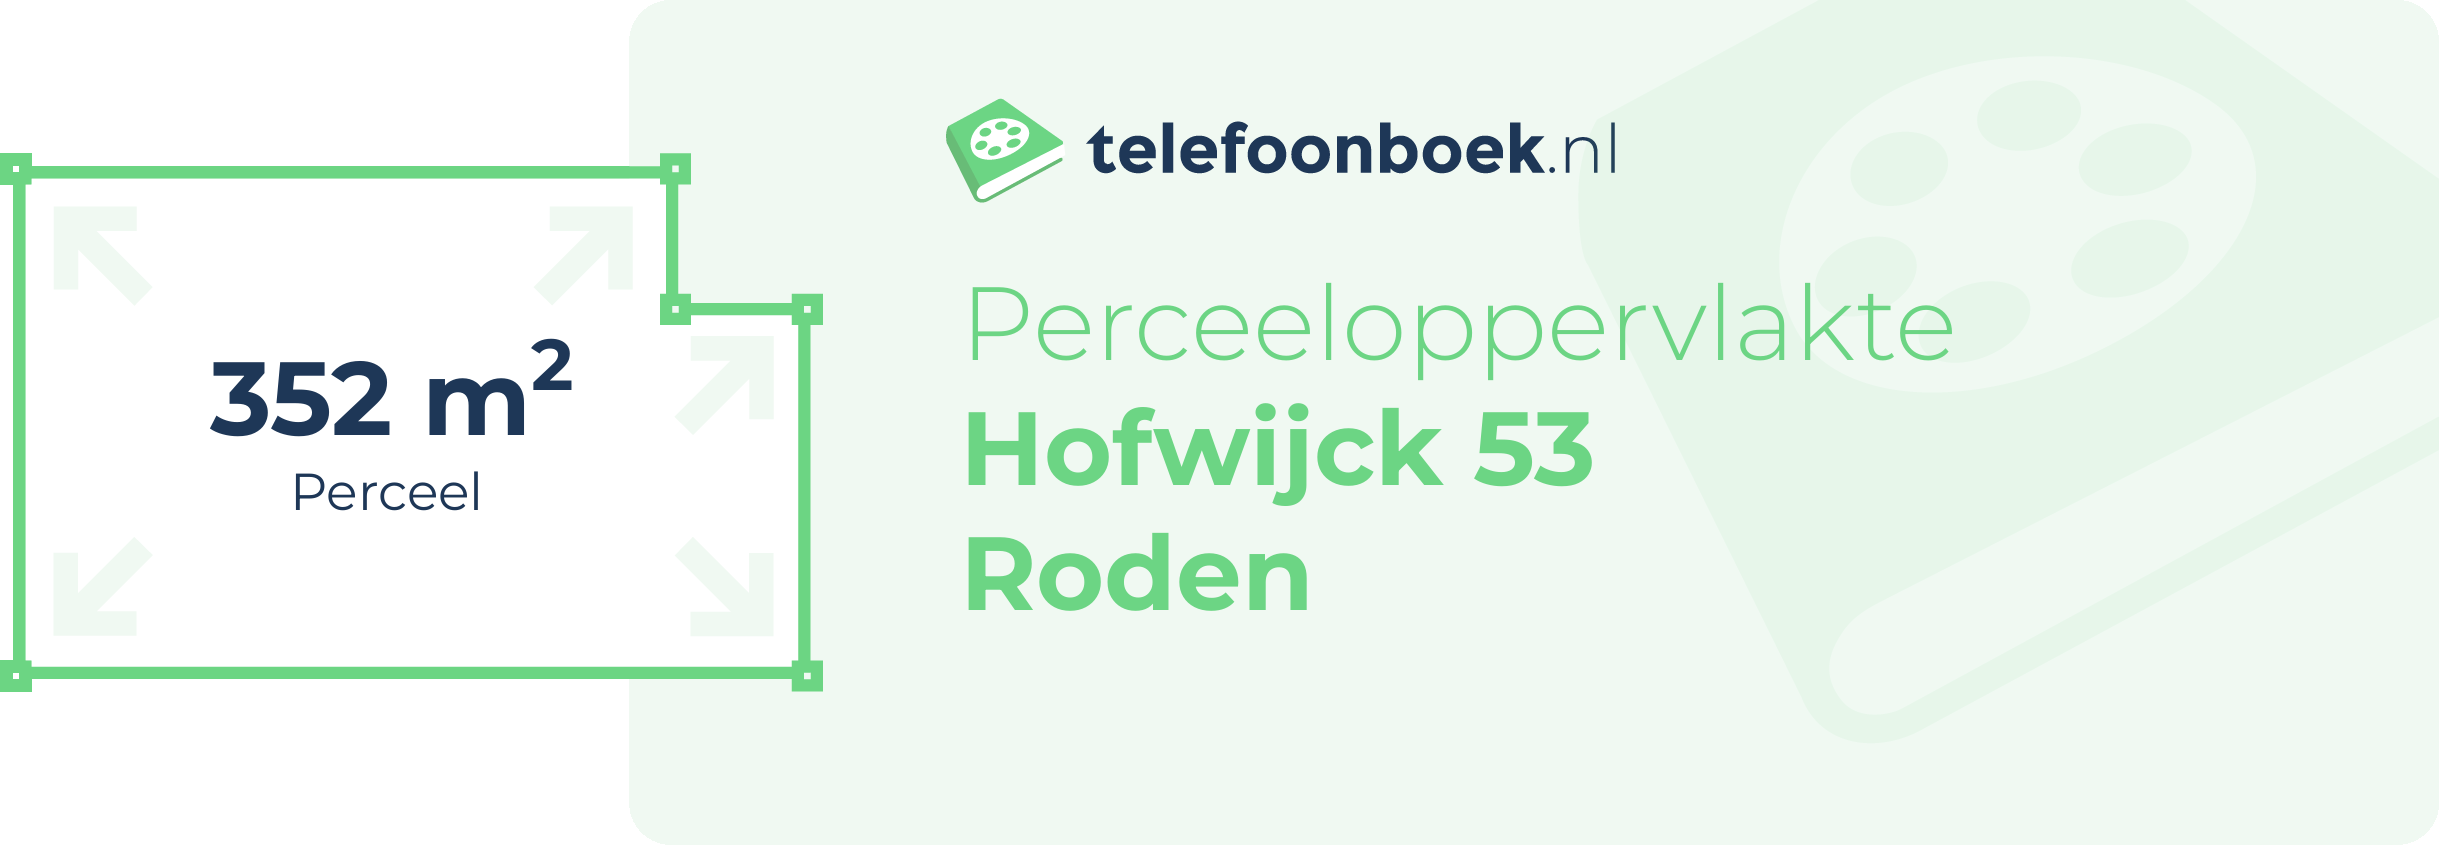 Perceeloppervlakte Hofwijck 53 Roden